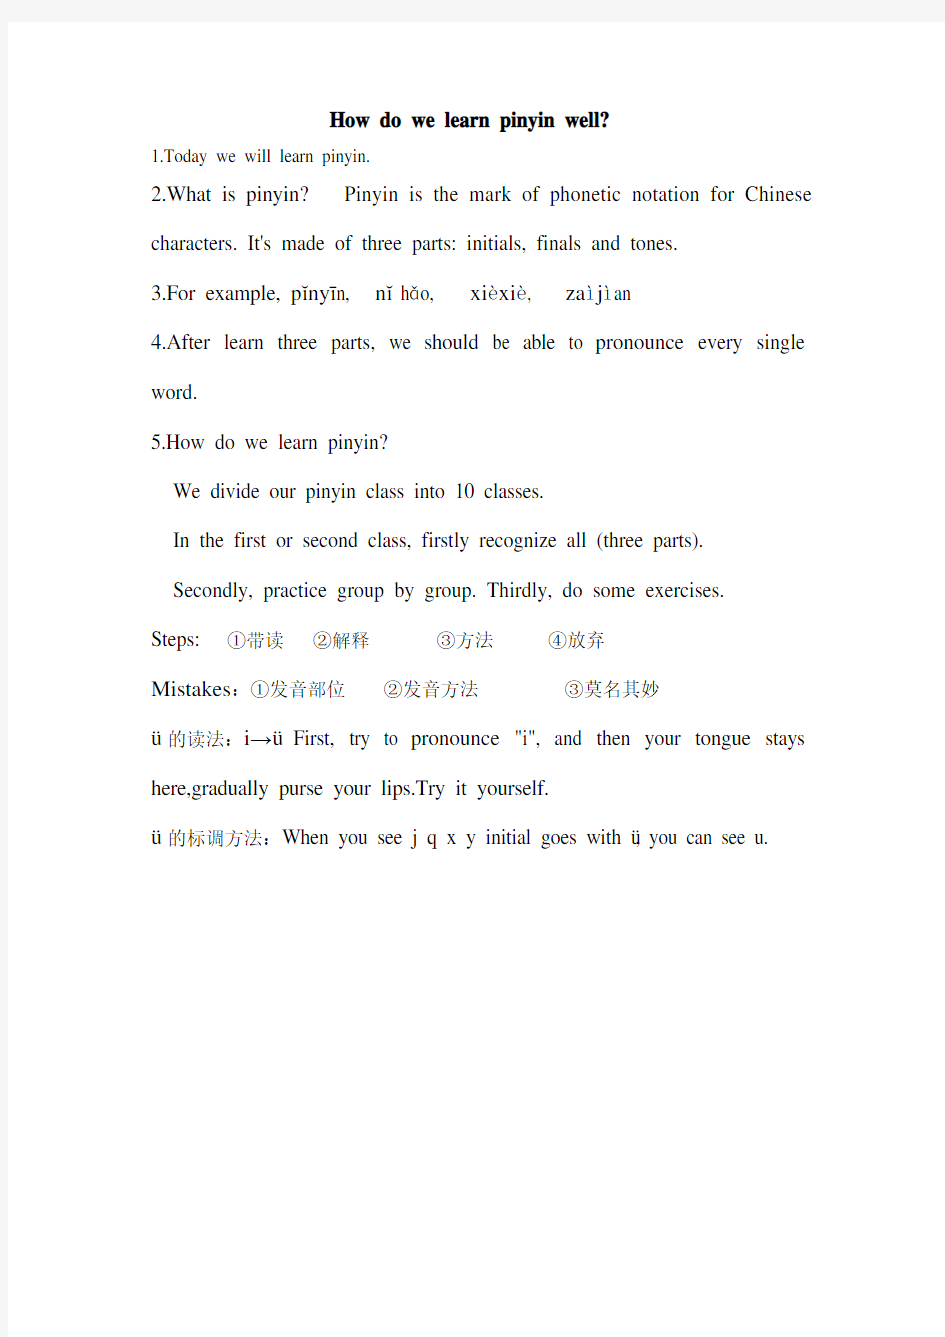 对外汉语拼音教学(英文版)